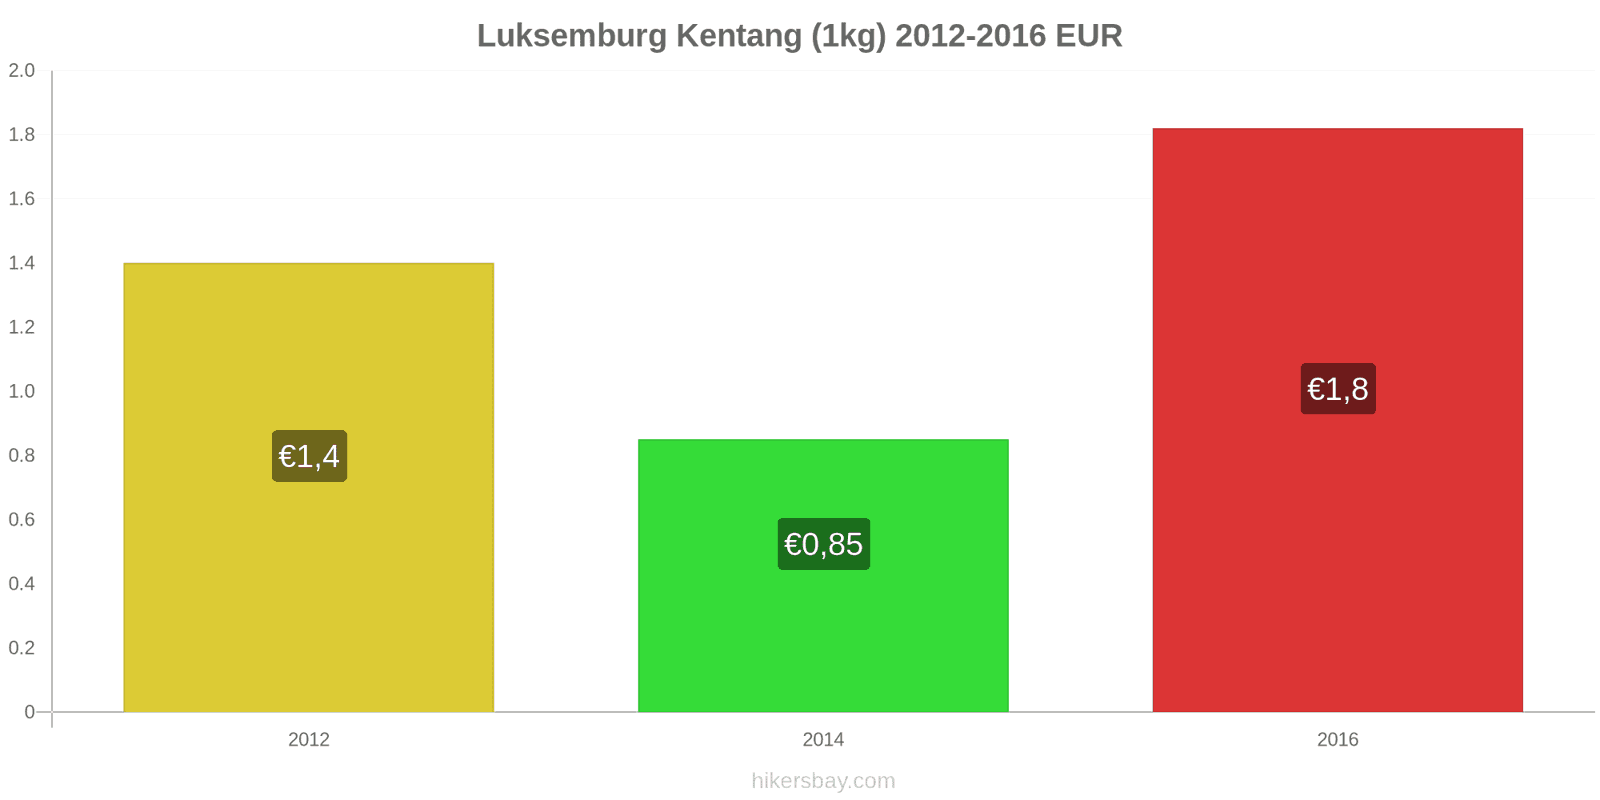 Luksemburg perubahan harga Kentang (1kg) hikersbay.com